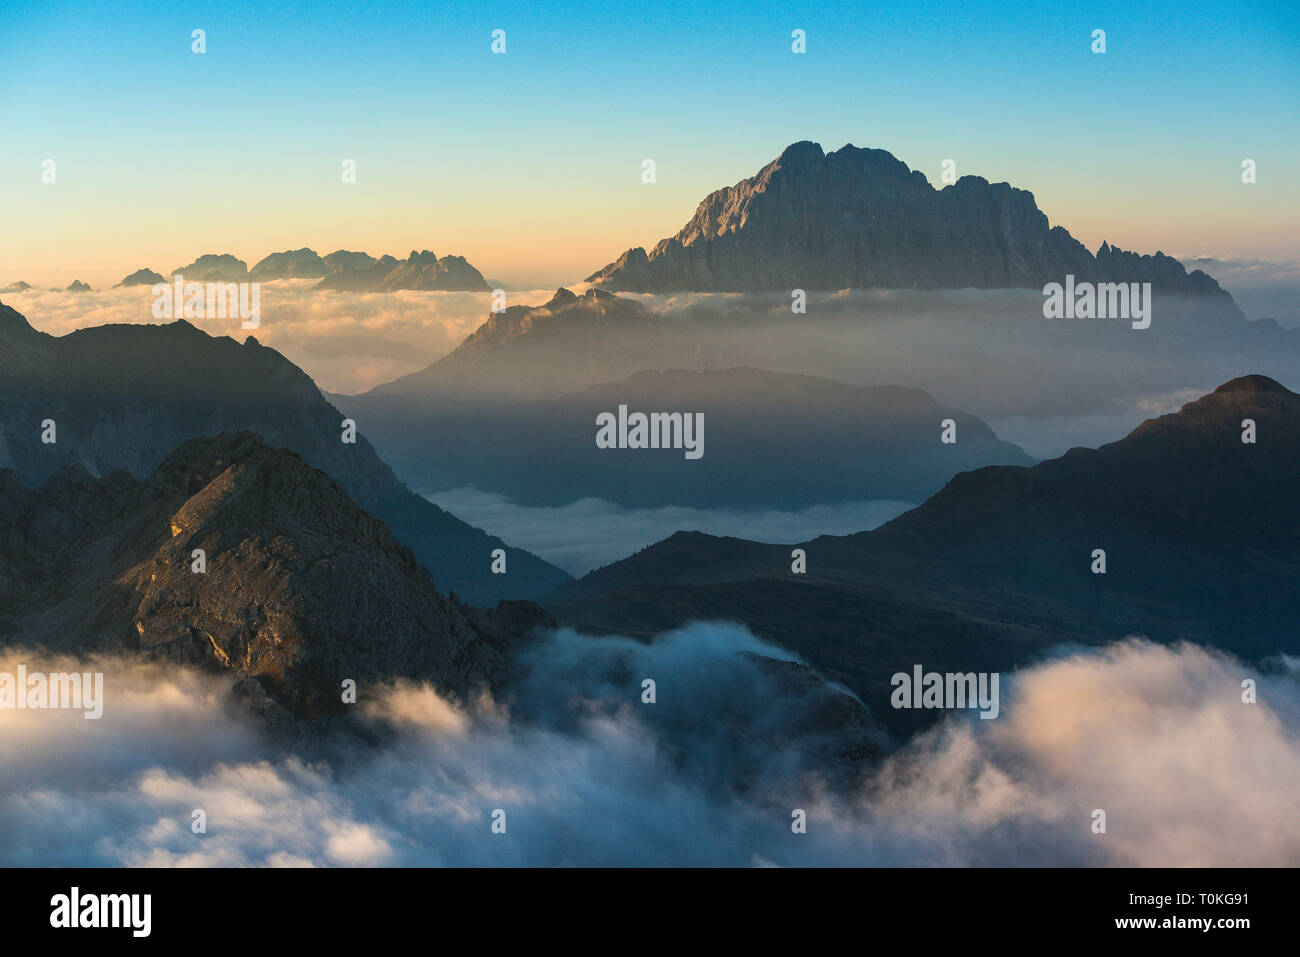 View from Rifugio Lagazuoi on sunrise, fog, Dolomites, Italy Stock Photo